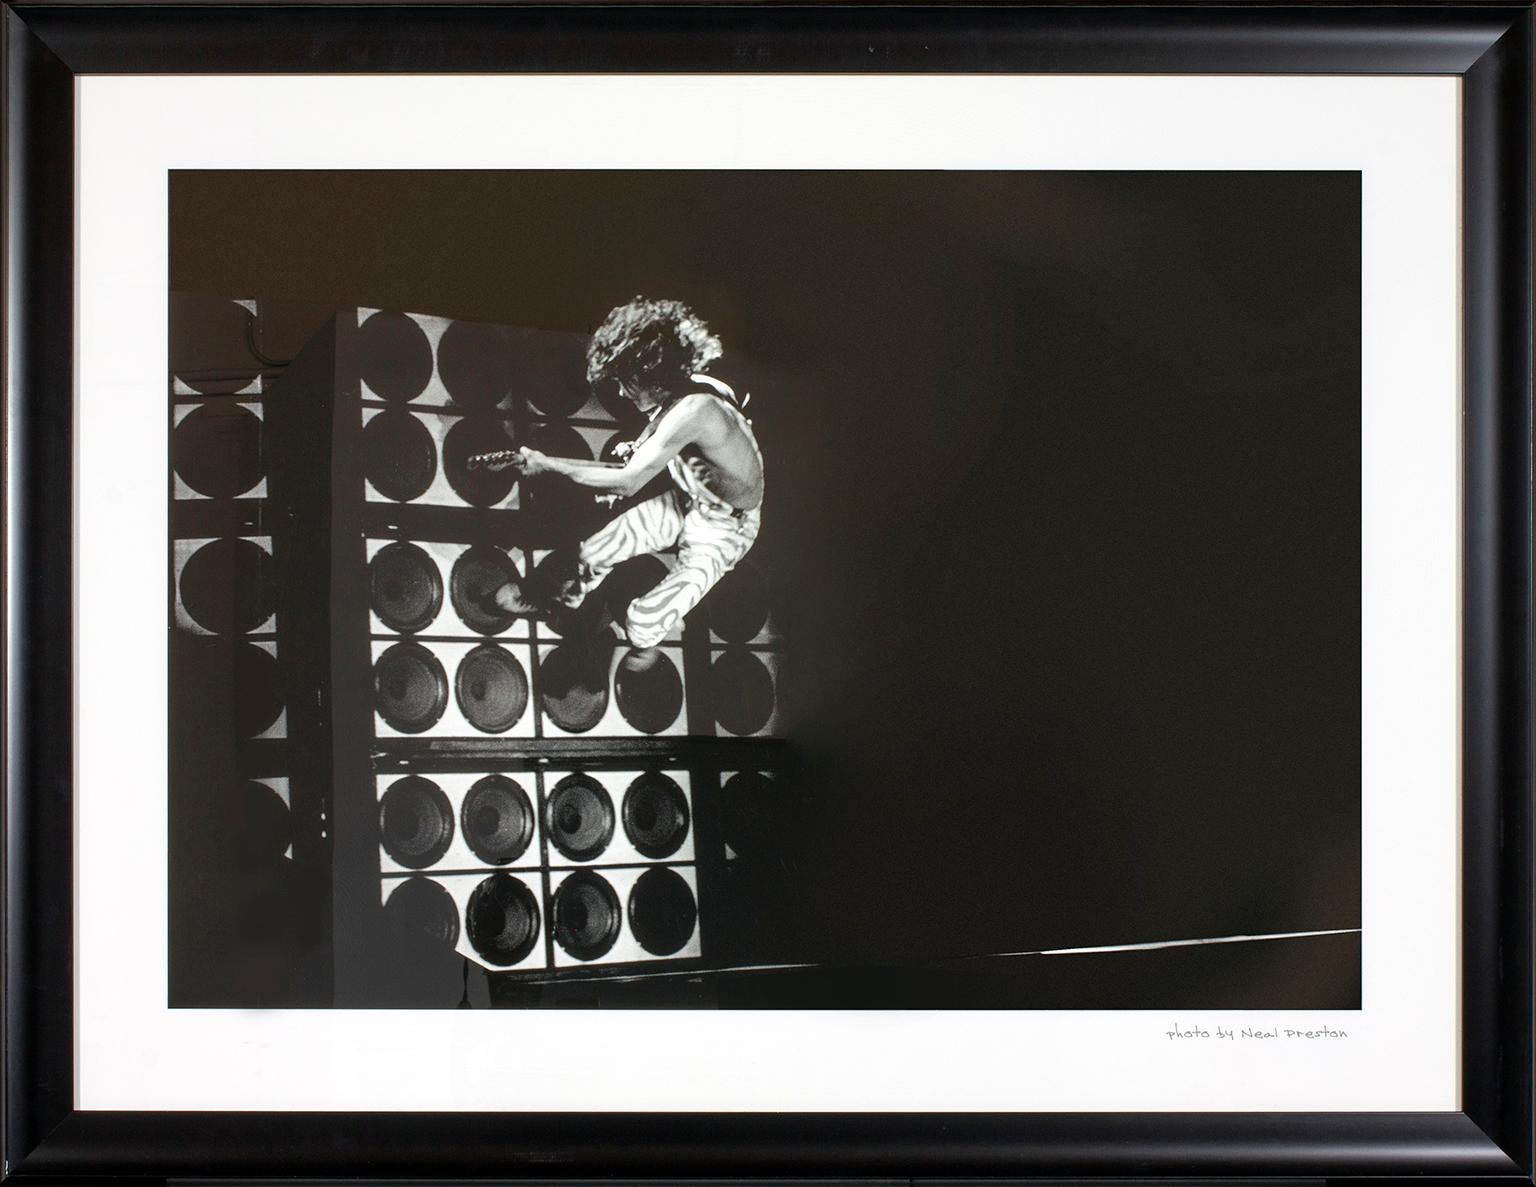 "Eddie Van Halen Wall Jump", Foto von Neal Preston. Foto von Neal Preston handschriftlich auf der Vorderseite in der unteren rechten Ecke. Dieses gerahmte Foto wurde früher in einem der Gästezimmer des ursprünglichen Hard Rock Hotel & Casino in Las